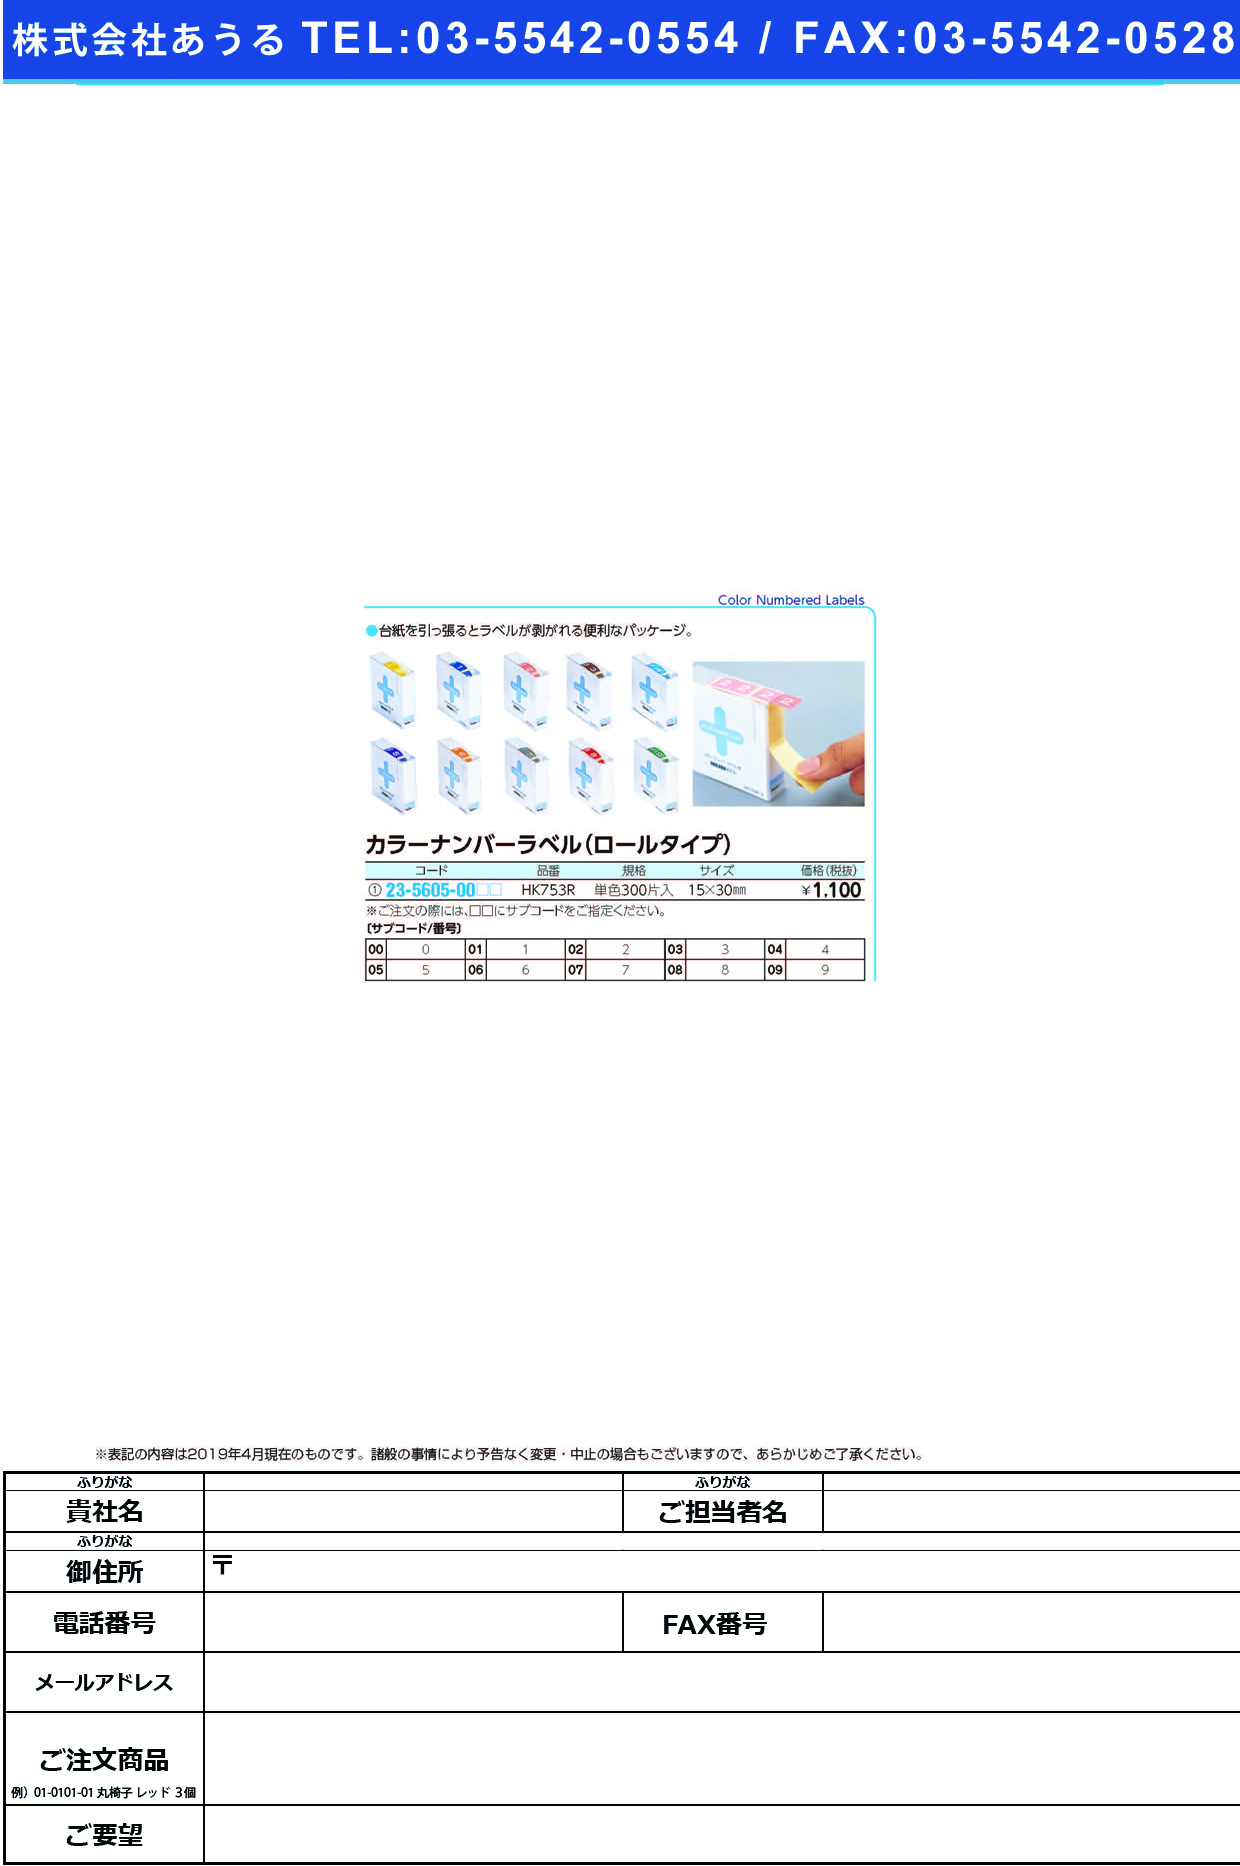 (23-5605-00)カラーナンバーラベル（Ｍ）ロール HK753R(ﾀﾝﾊﾞﾝ)300ﾍﾝｲﾘ ｶﾗｰﾅﾝﾊﾞｰﾗﾍﾞﾙMﾛｰﾙ ８(ＬＩＨＩＴＬＡＢ．)【1箱単位】【2019年カタログ商品】